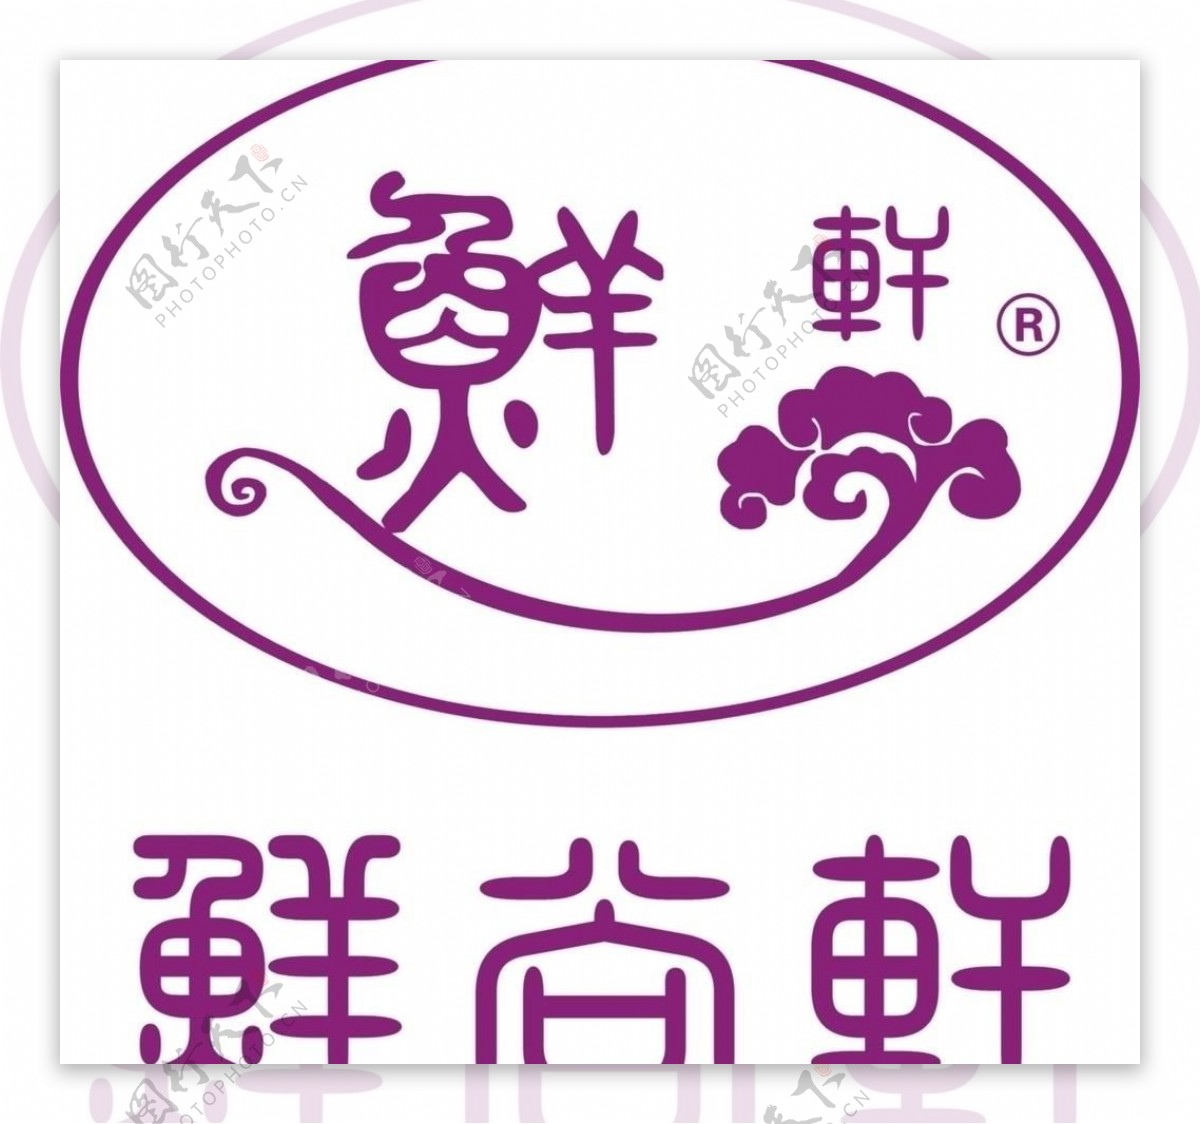 鲜尚轩logo图片